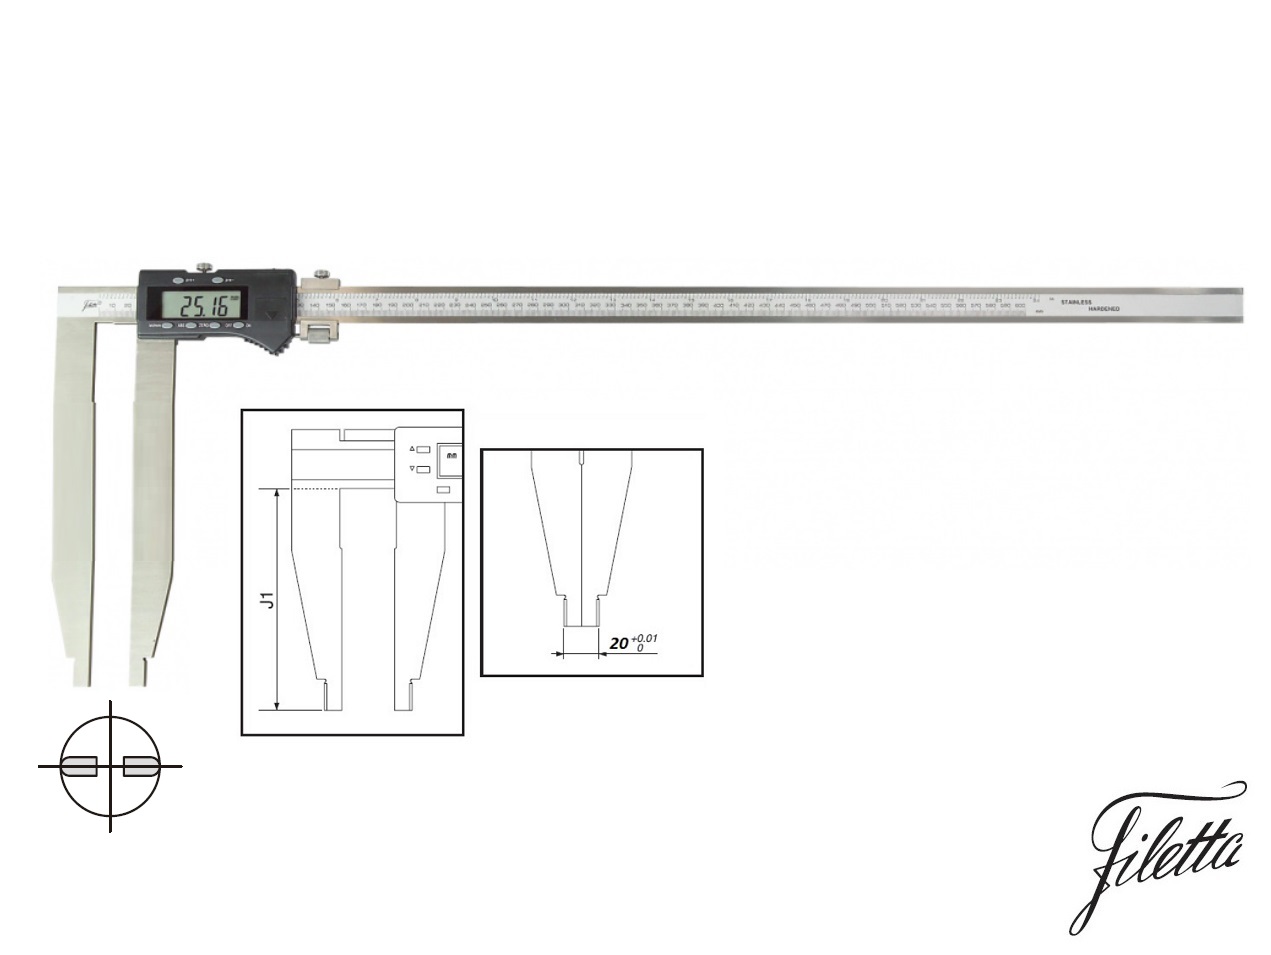 Digitální posuvné měřítko Filetta 0-1500 mm  bez nožíků, s měřicími čelistmi 300 mm